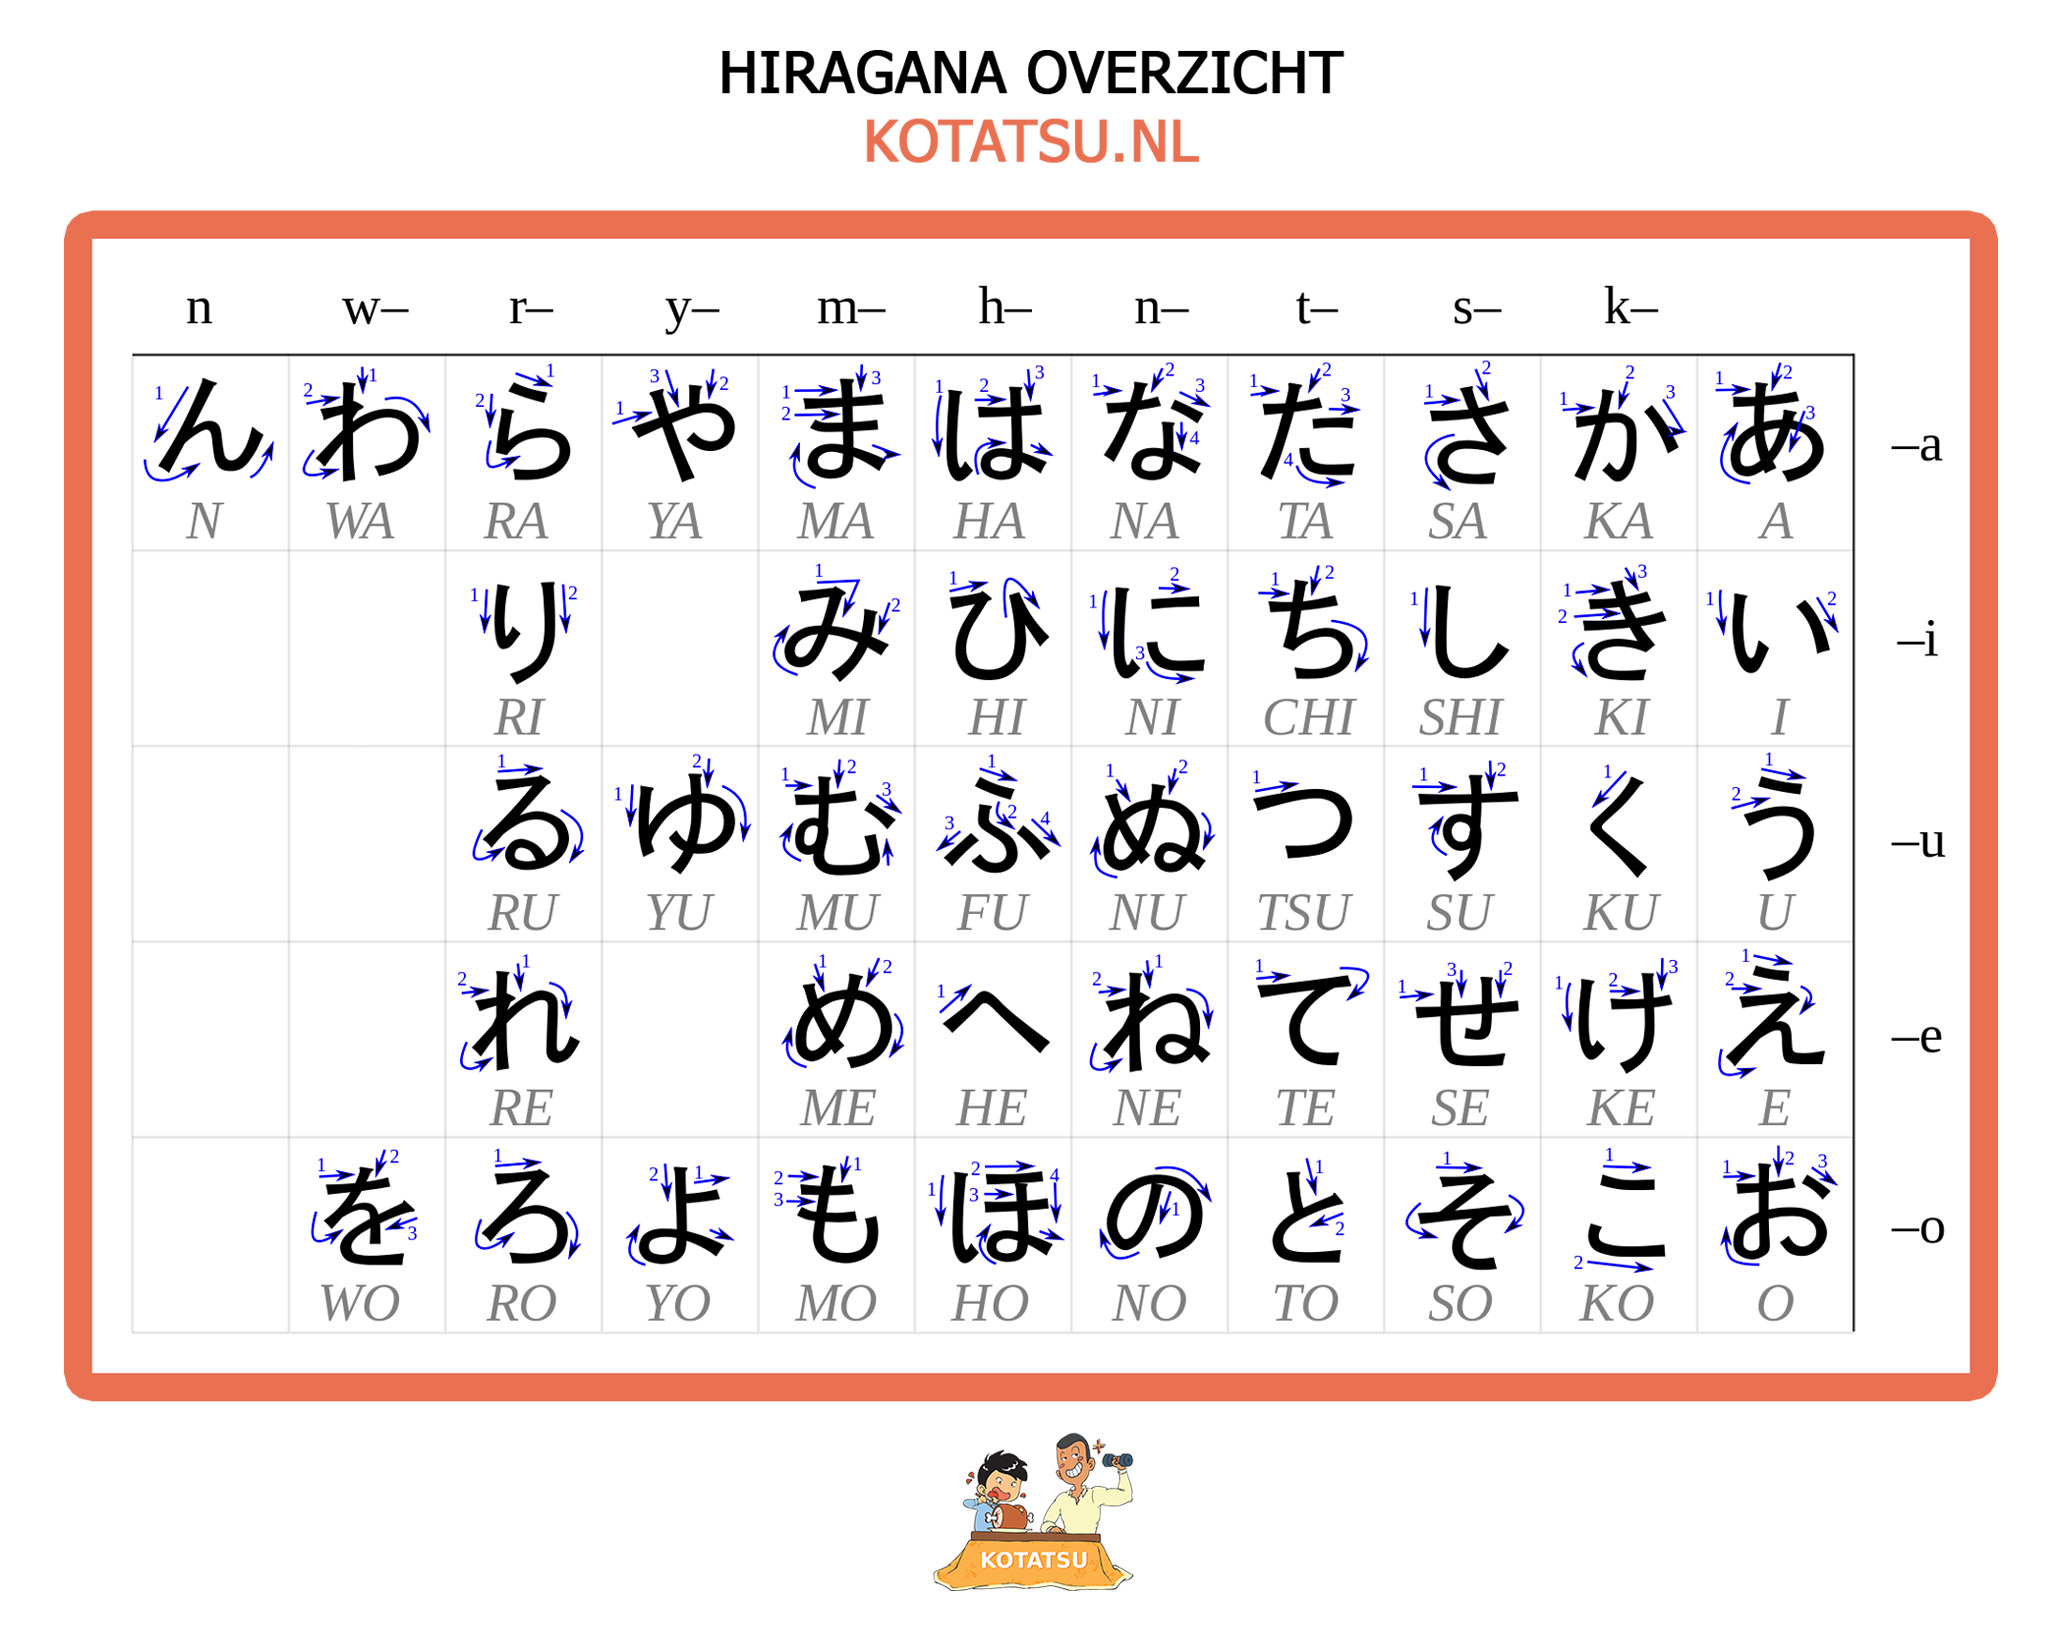 Spiksplinternieuw Japans Lezen en Schrijven Deel 1 - Het Japans Alfabet TG-36